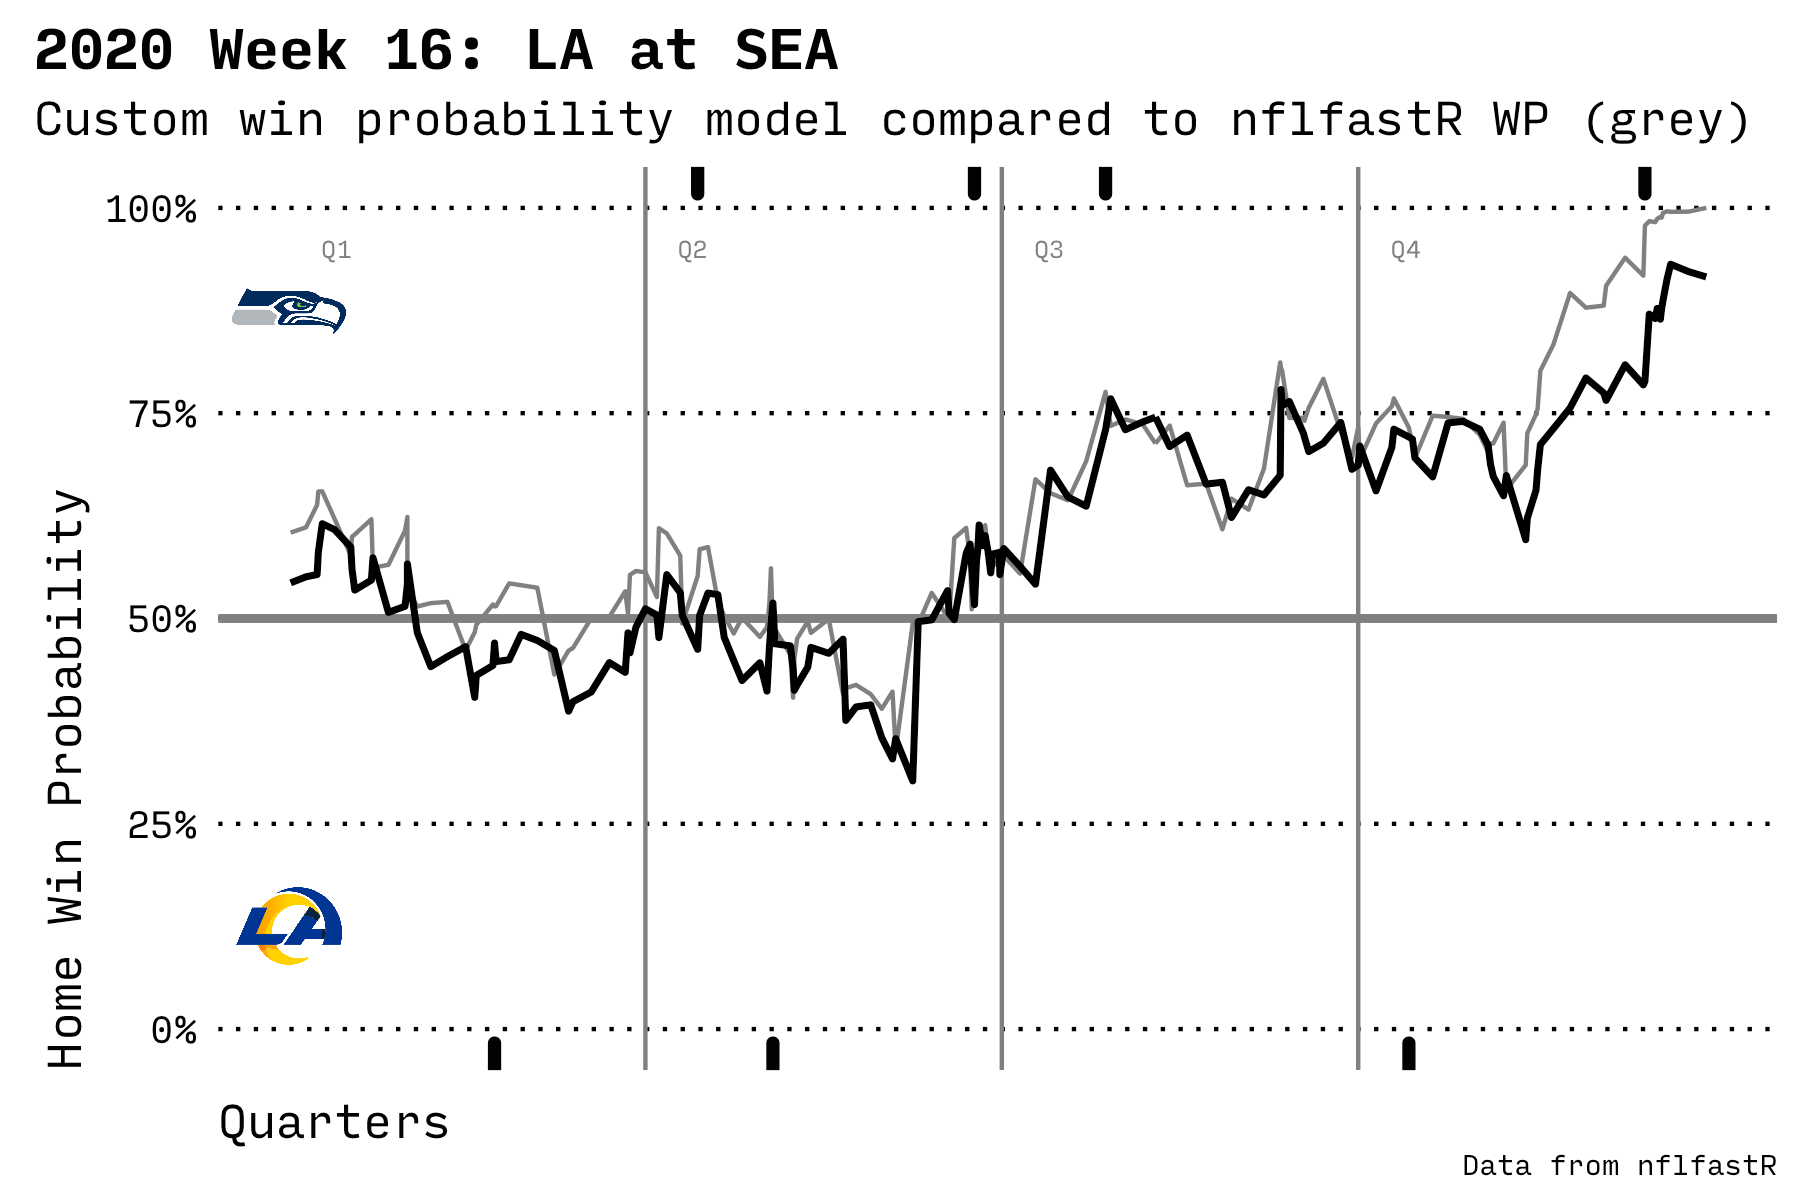 LA vs SEA in 2020